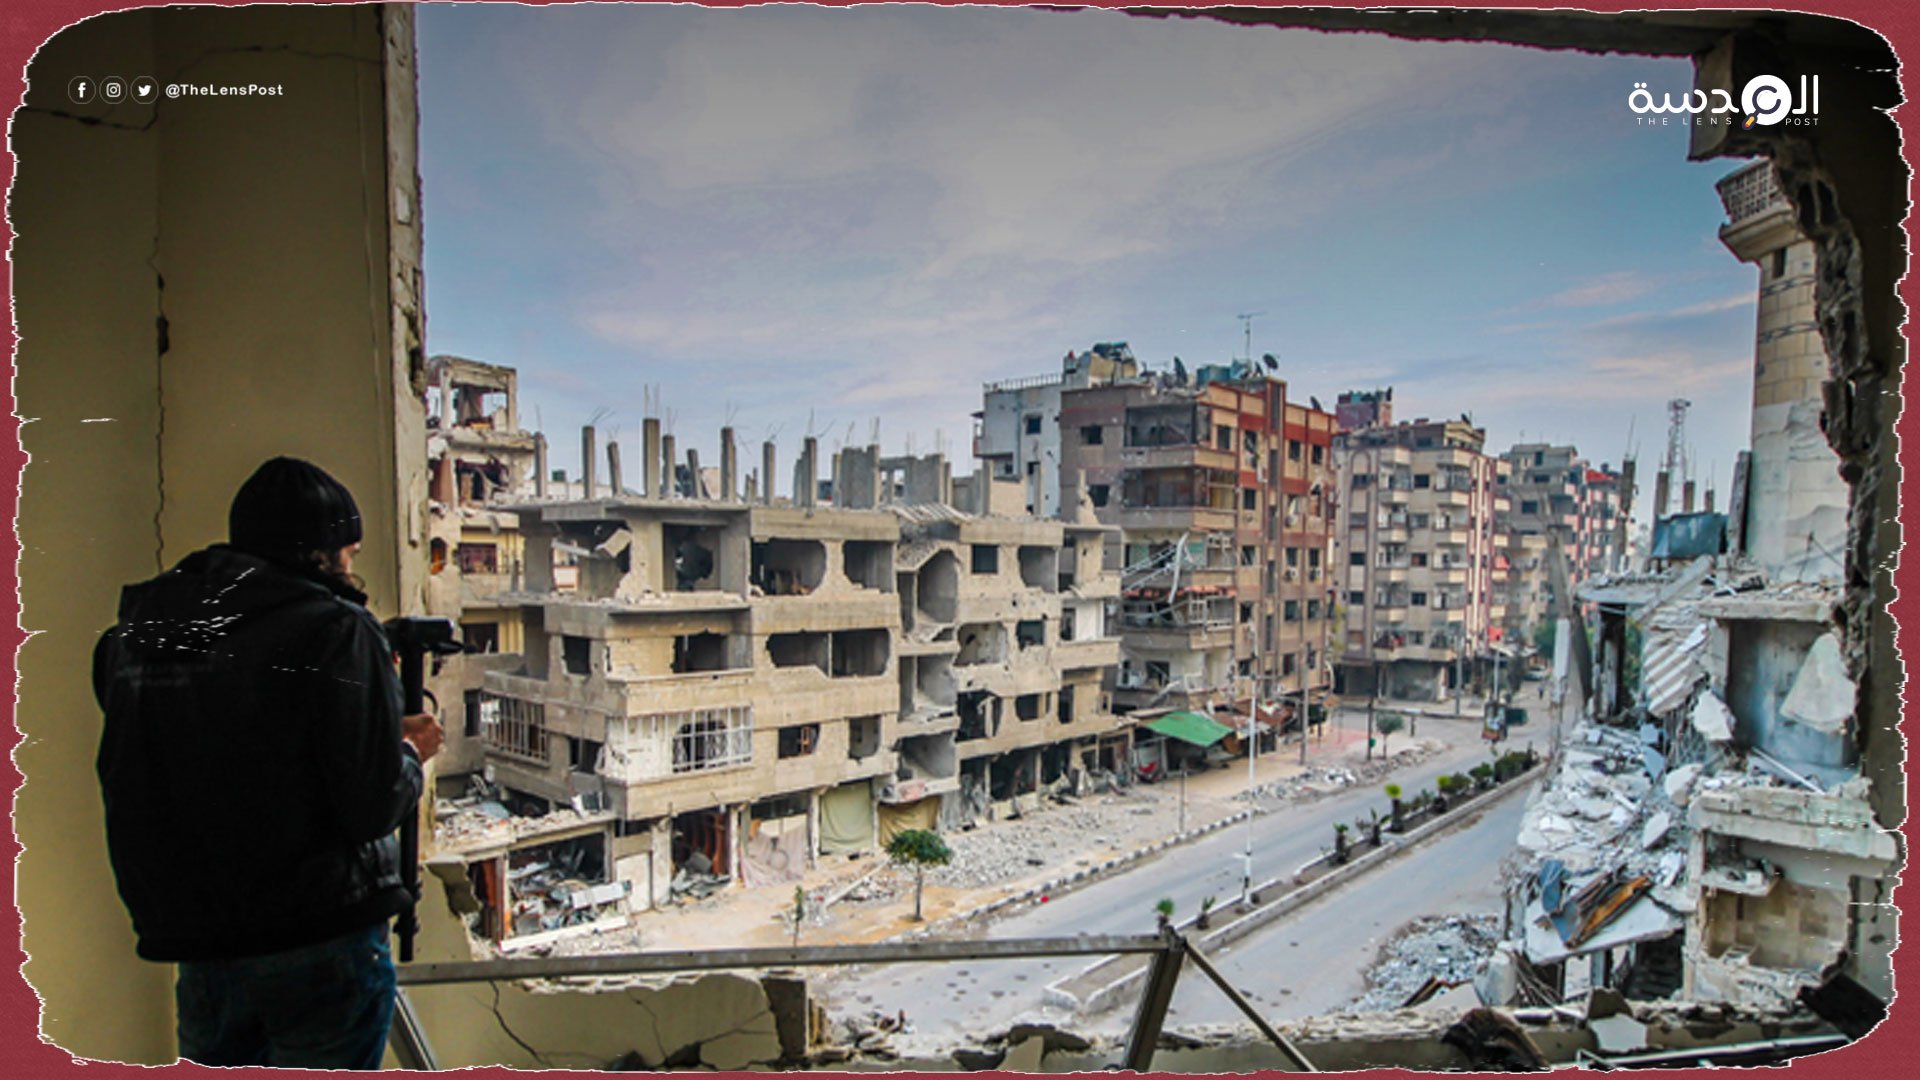 تصوير فيلم صيني إماراتي عن الحرب اليمنية في دمشق